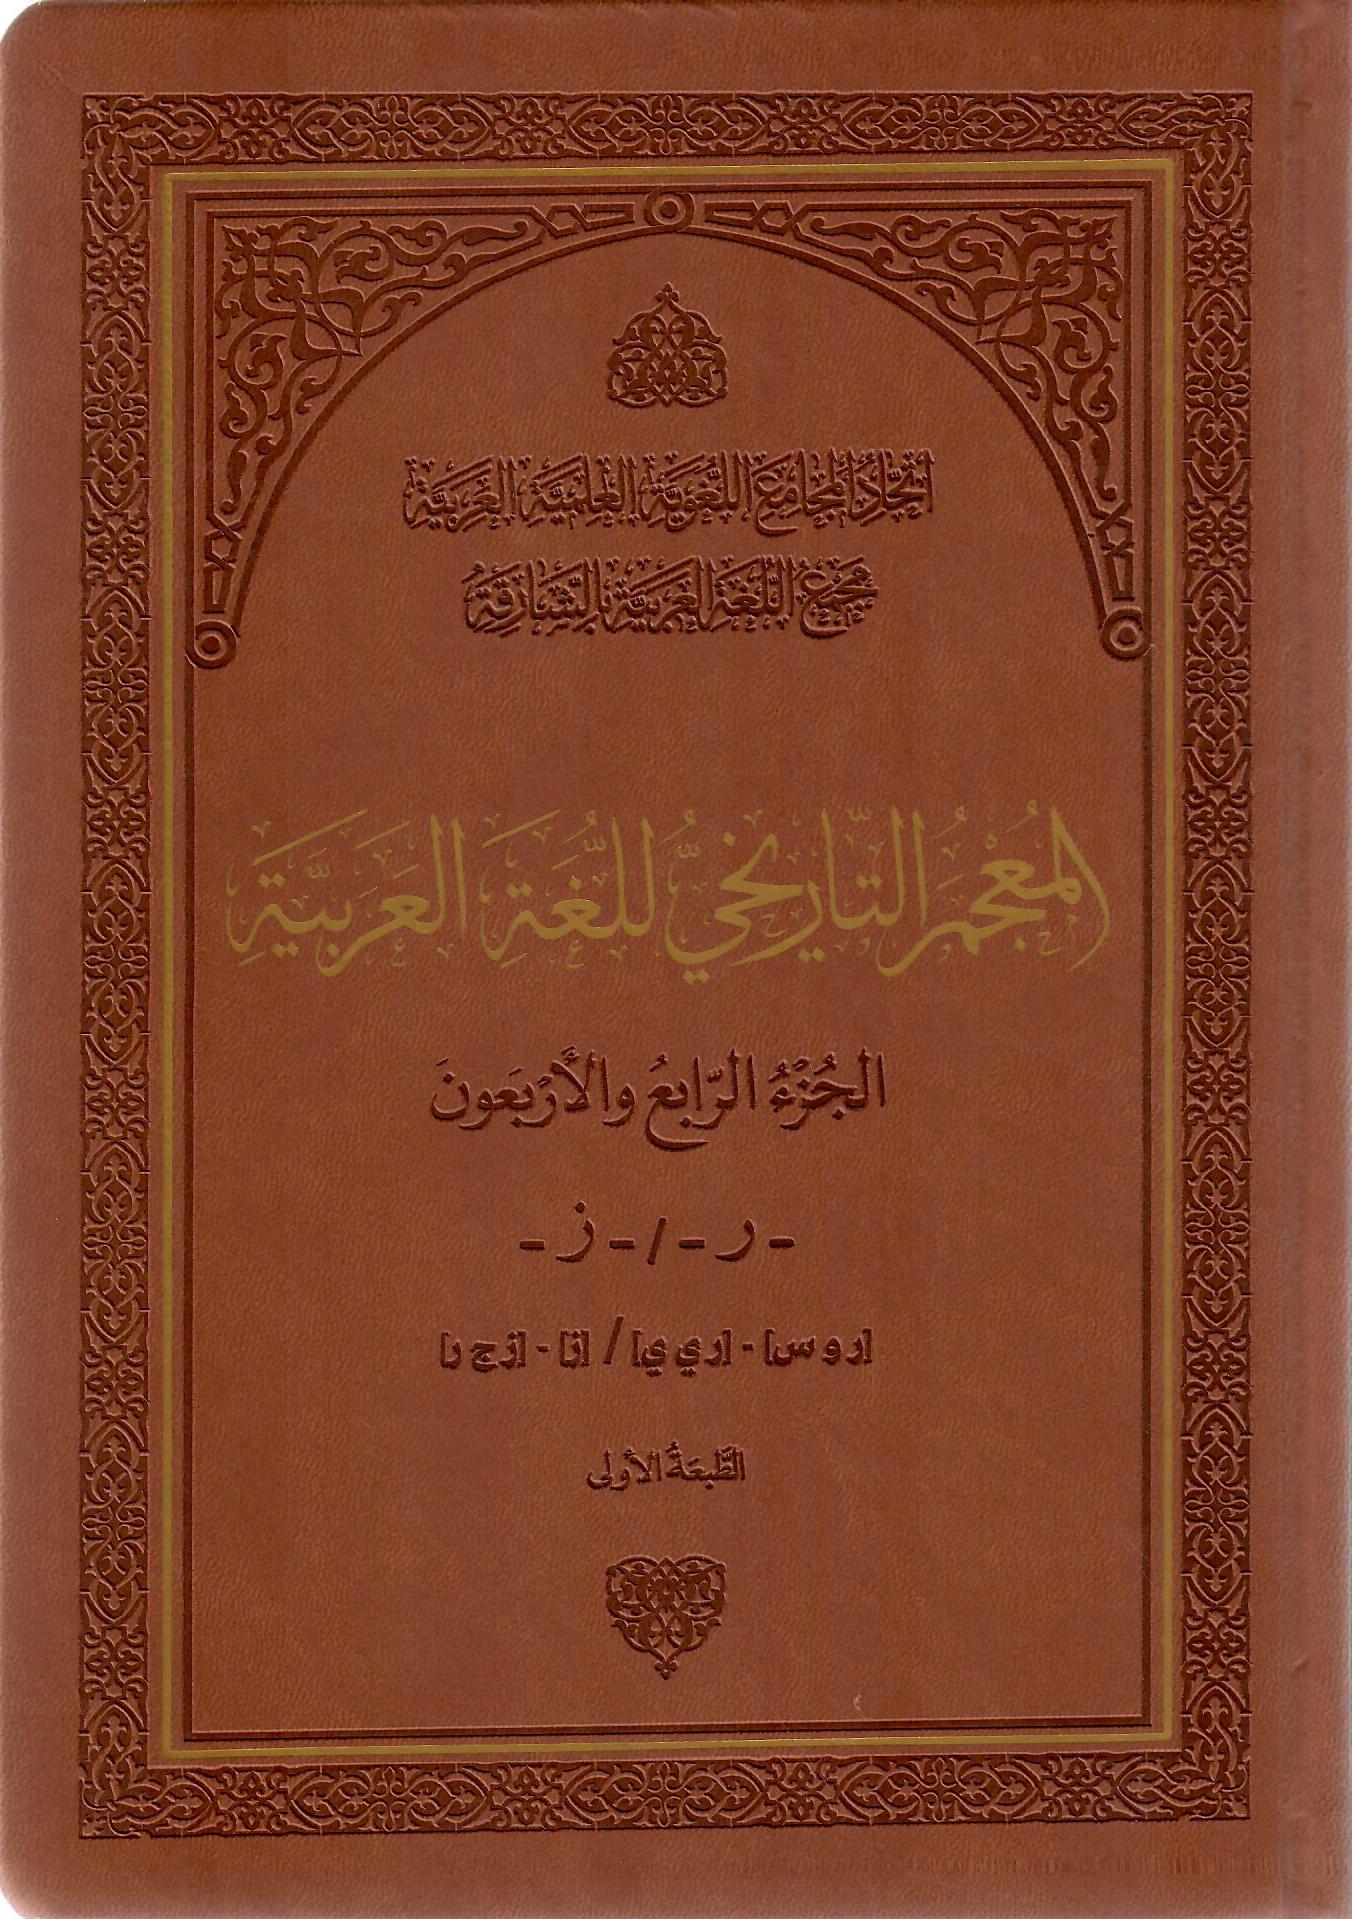 المعجم التاريخي للغة العربية الجزء الرابع والأربعون